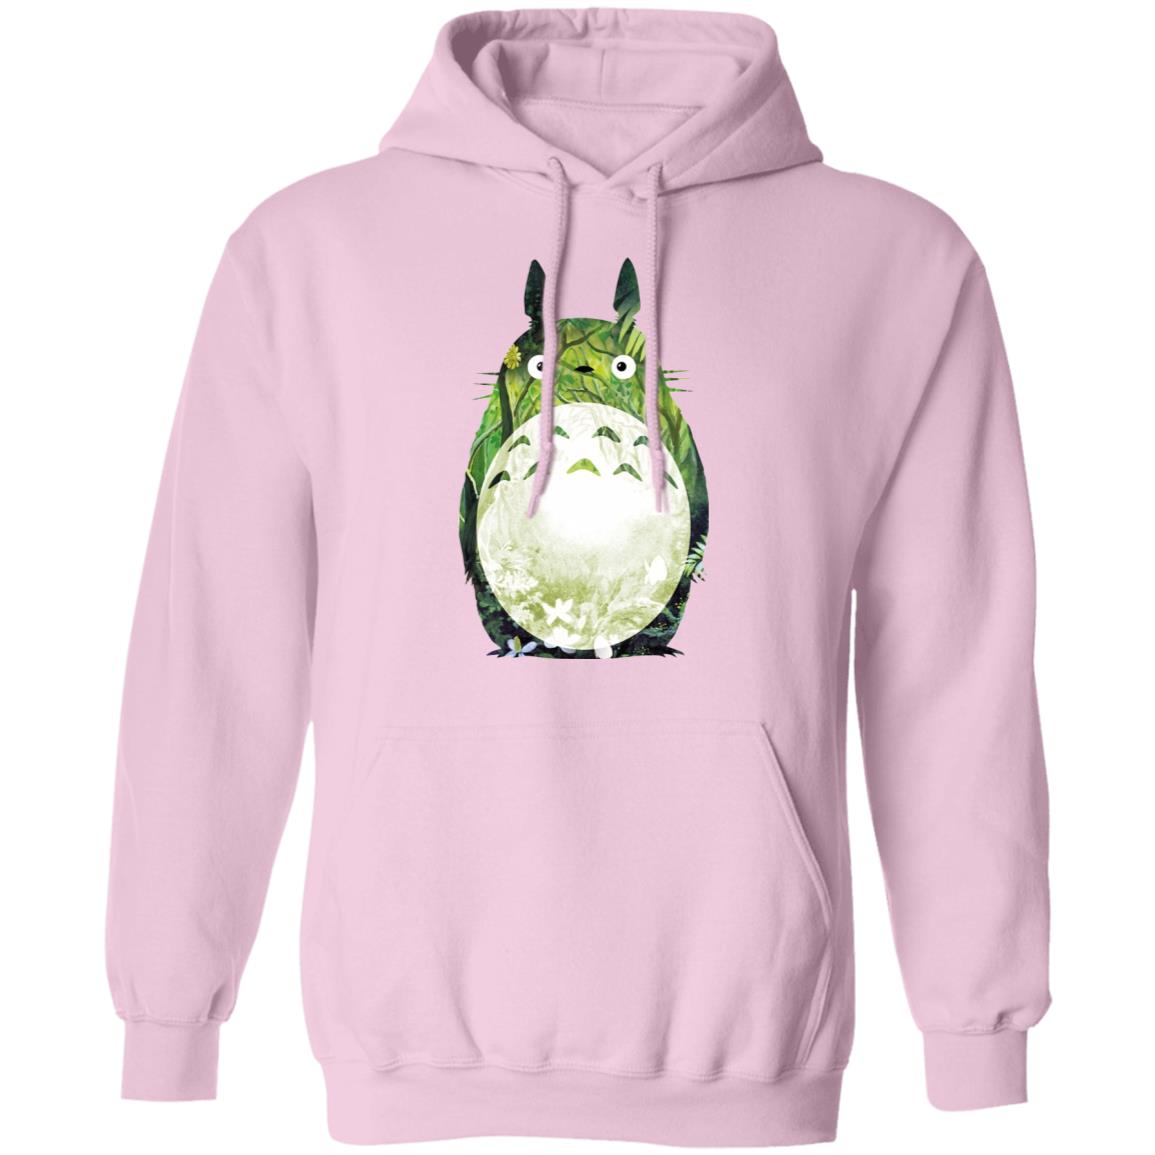 The Green Totoro Hoodie